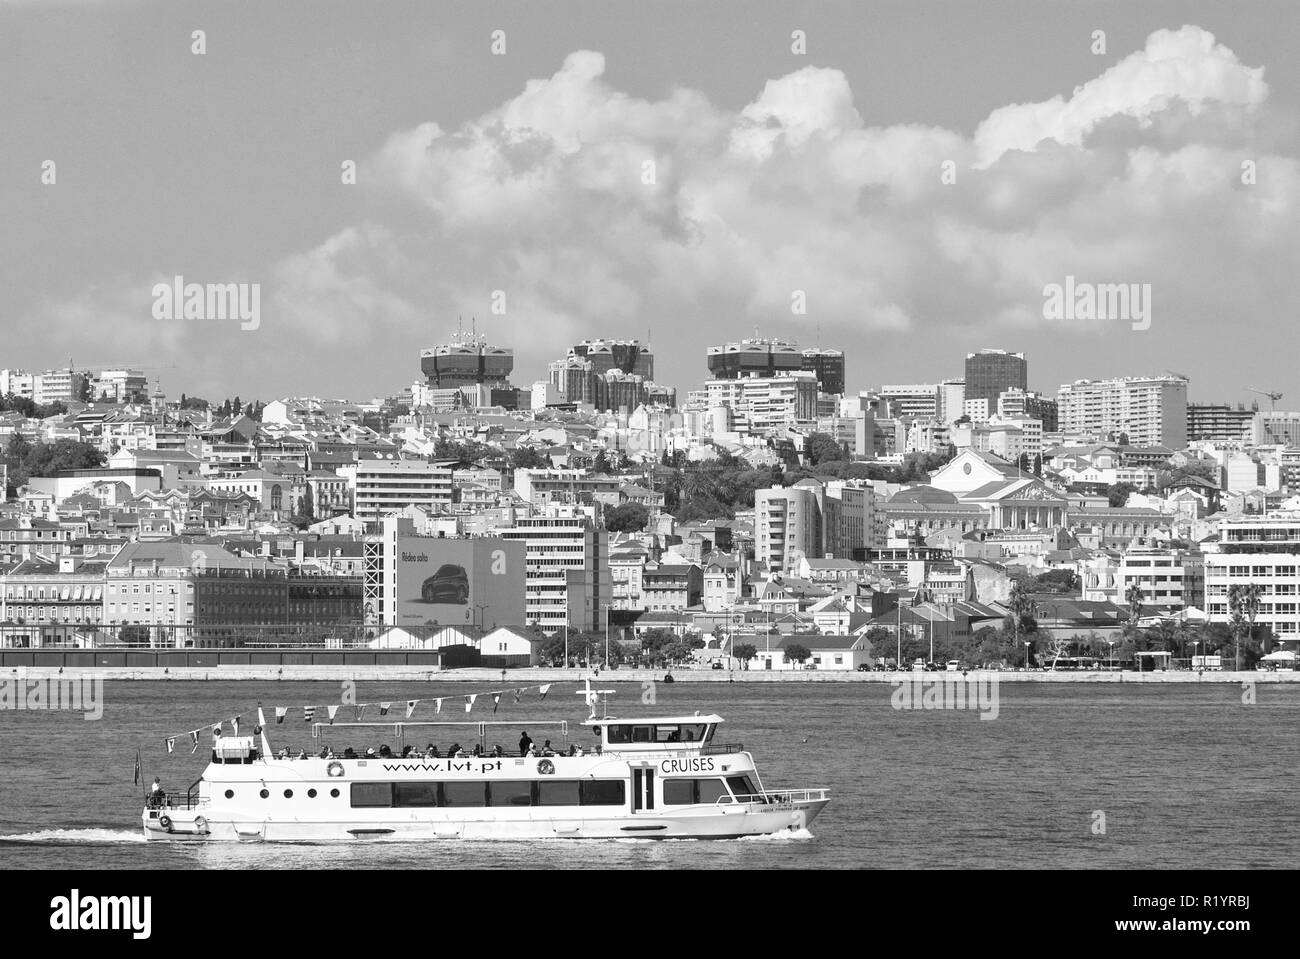 Lisbonne, Portugal - 03 Avril 2010 : les voyages en bateau de croisière le long de la ville. Ville architecture sur nuageux ciel bleu. Voyager par l'eau. Profitez des vacances d'été. Voyage Voyage et concept. Banque D'Images